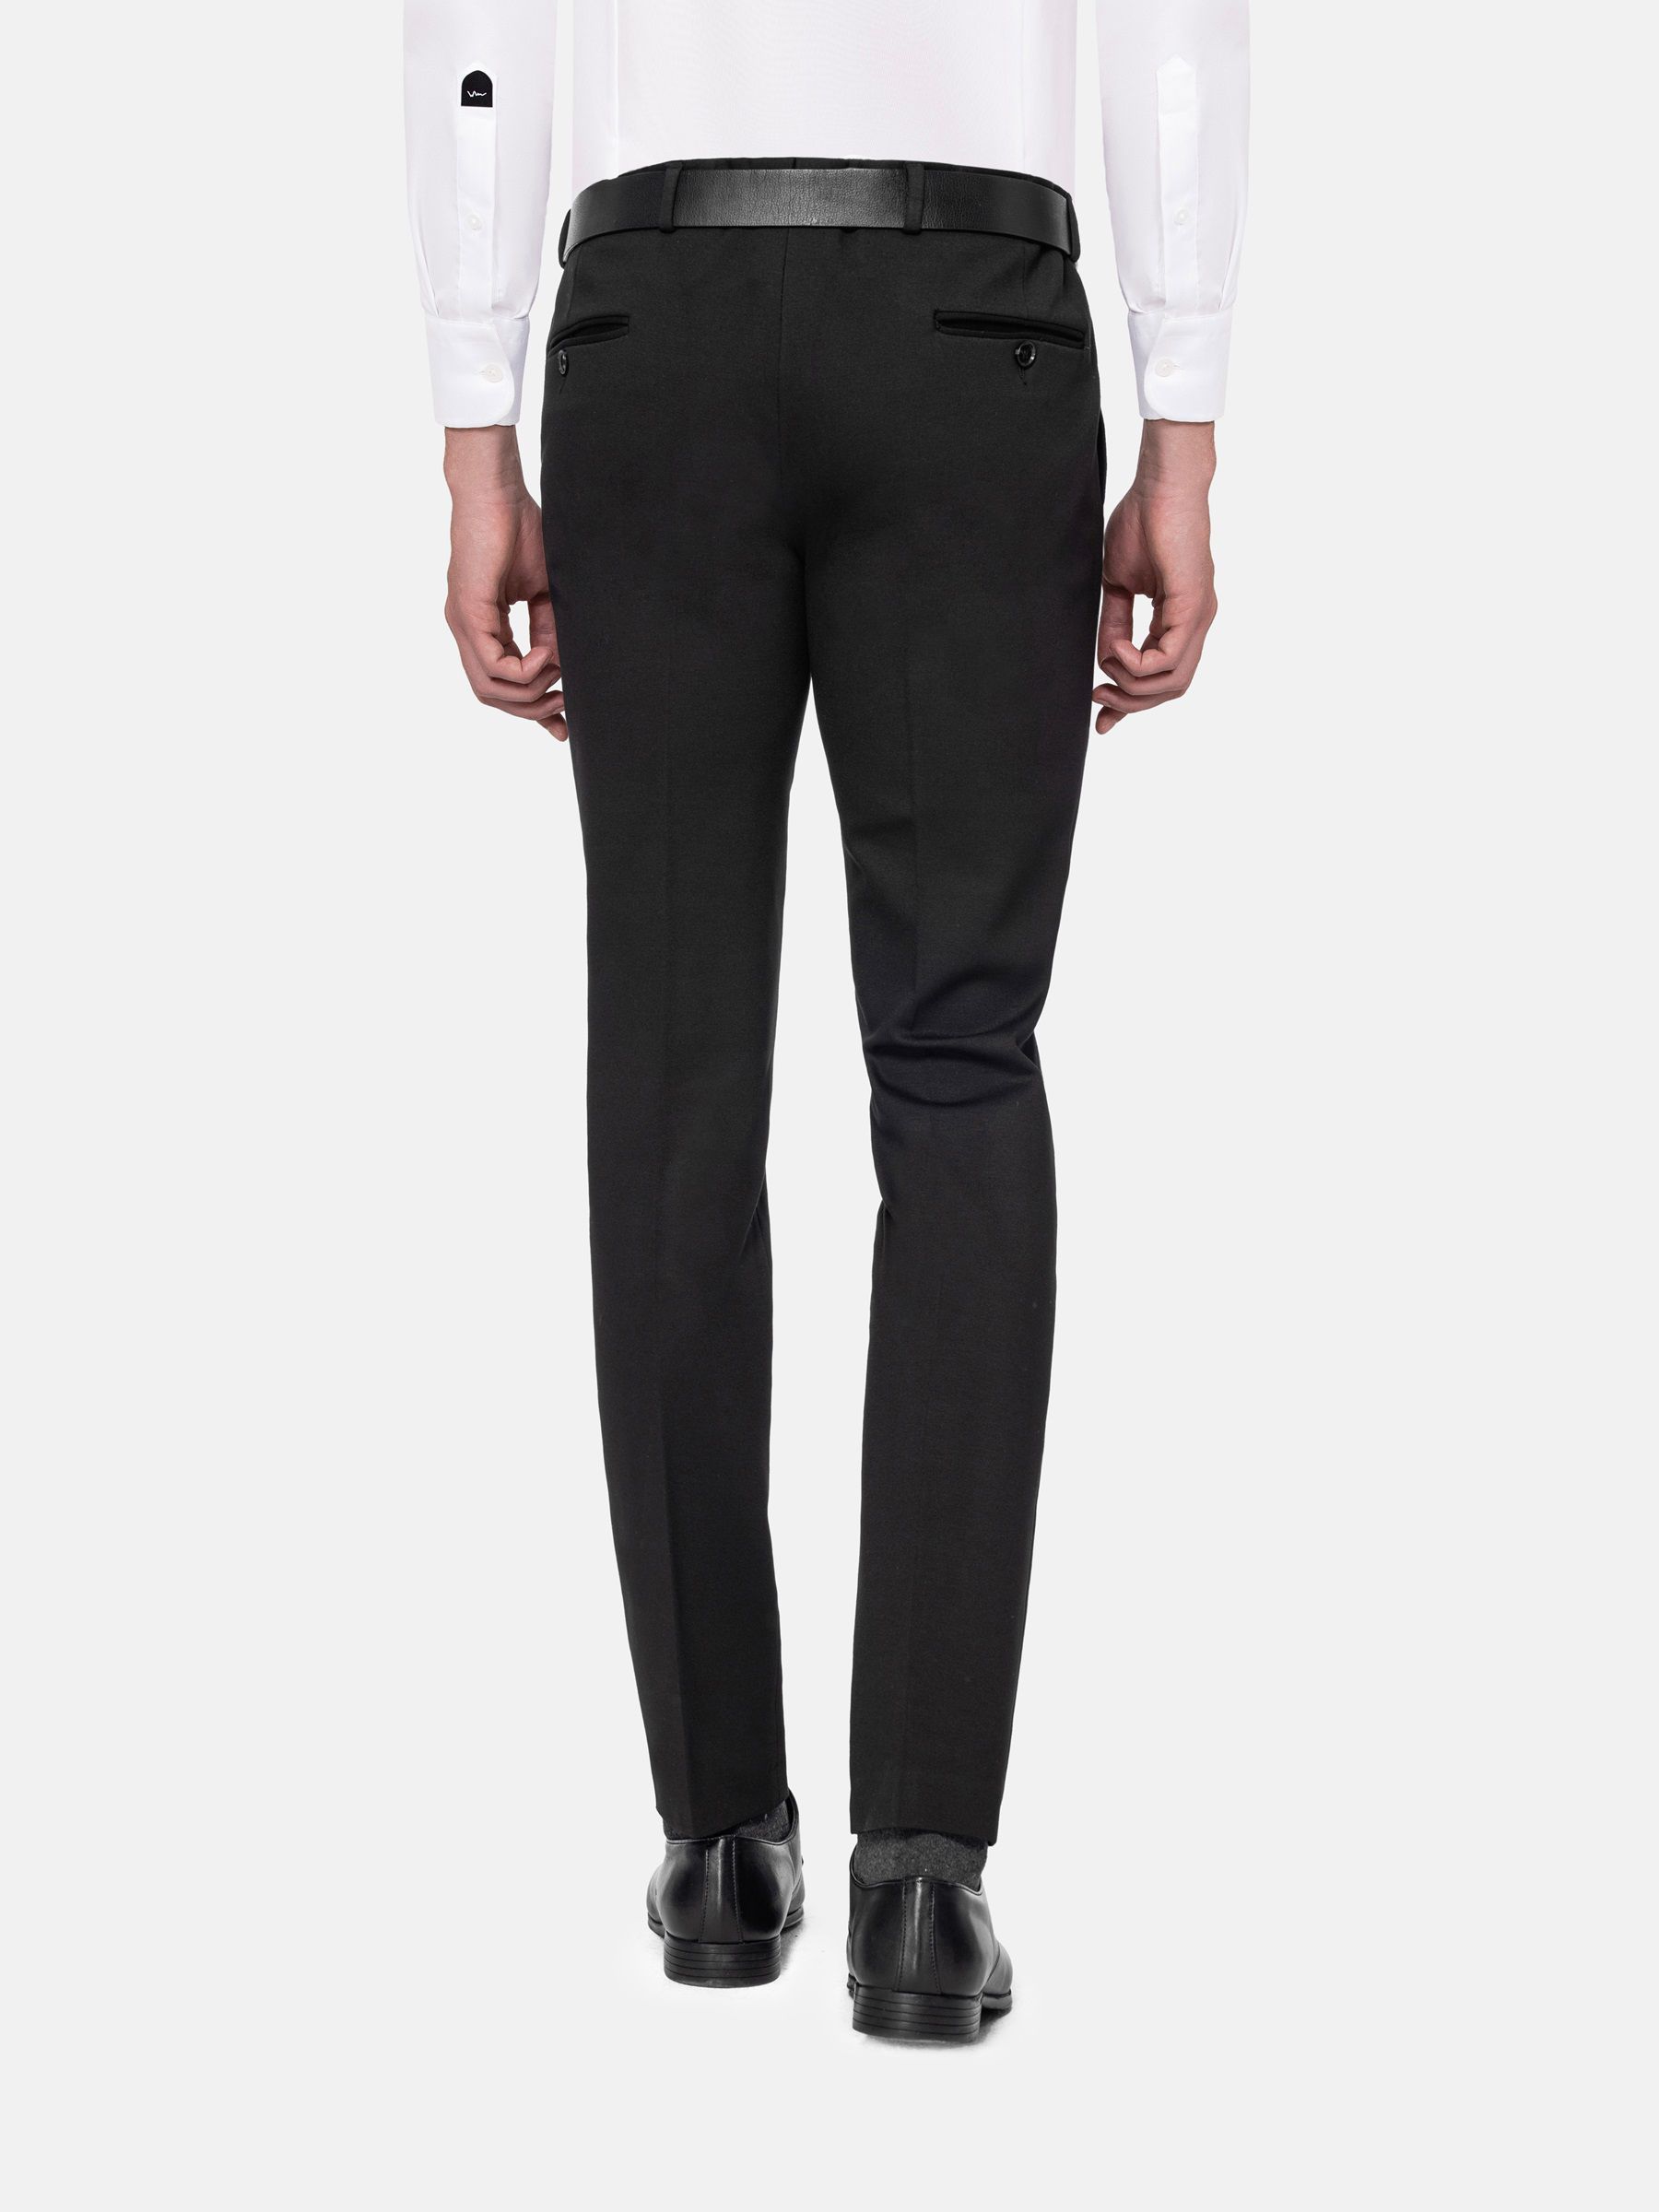 Men's Black Suit Pants